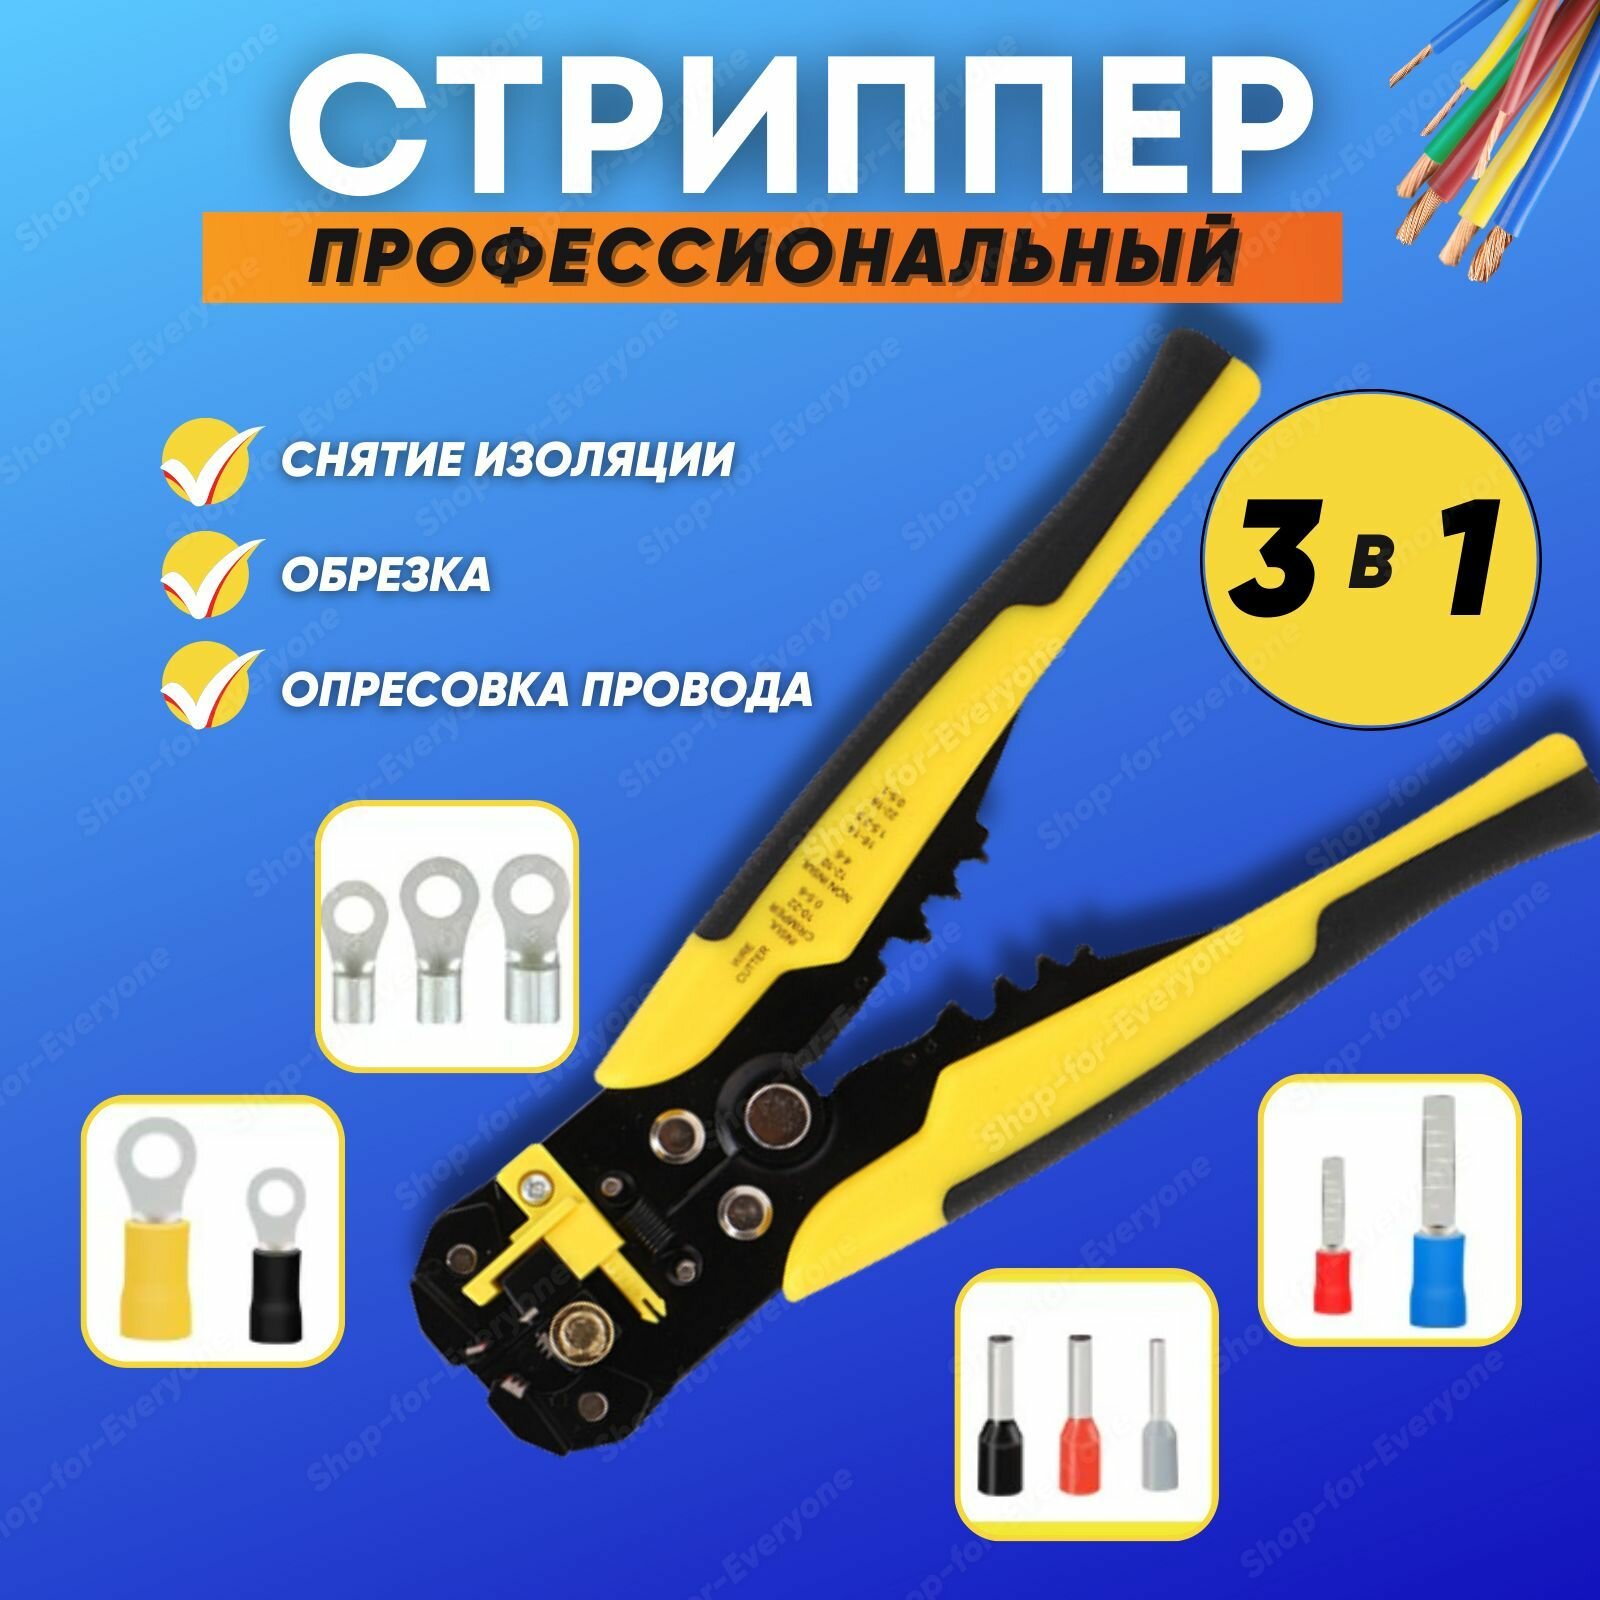 Стриппер 3в1 для снятия изоляции (провода 002-6 кв. мм) Клещи-кримпер обжимные желтые